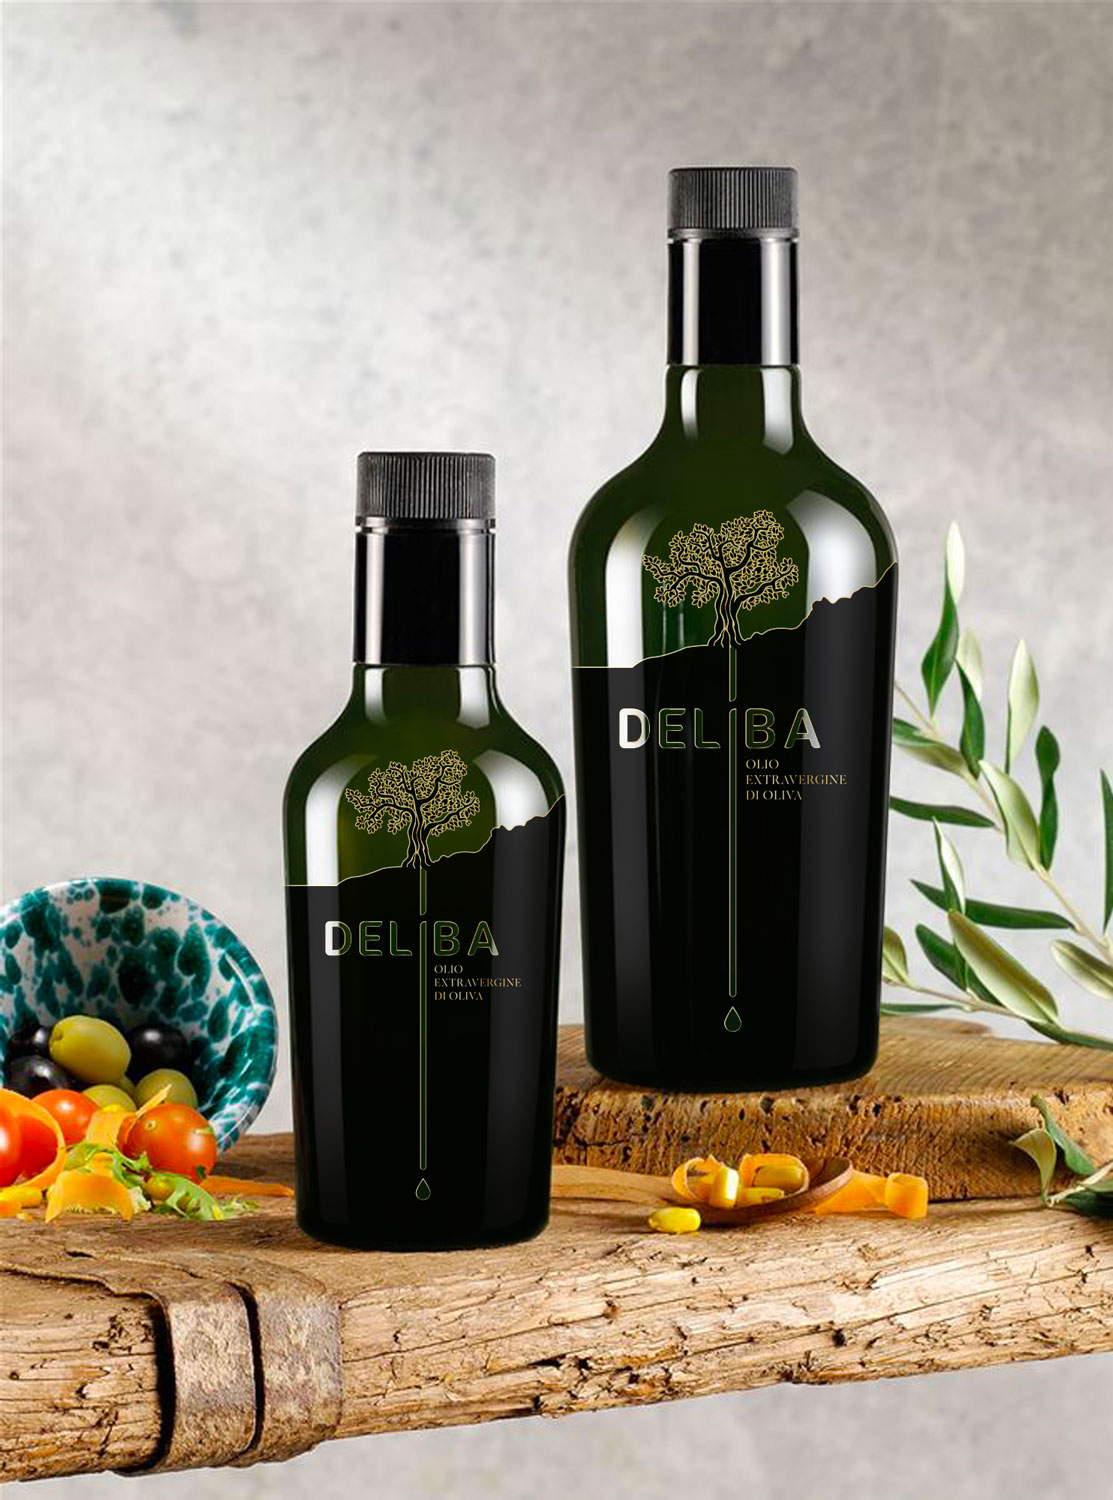 Deliba - proposta logo